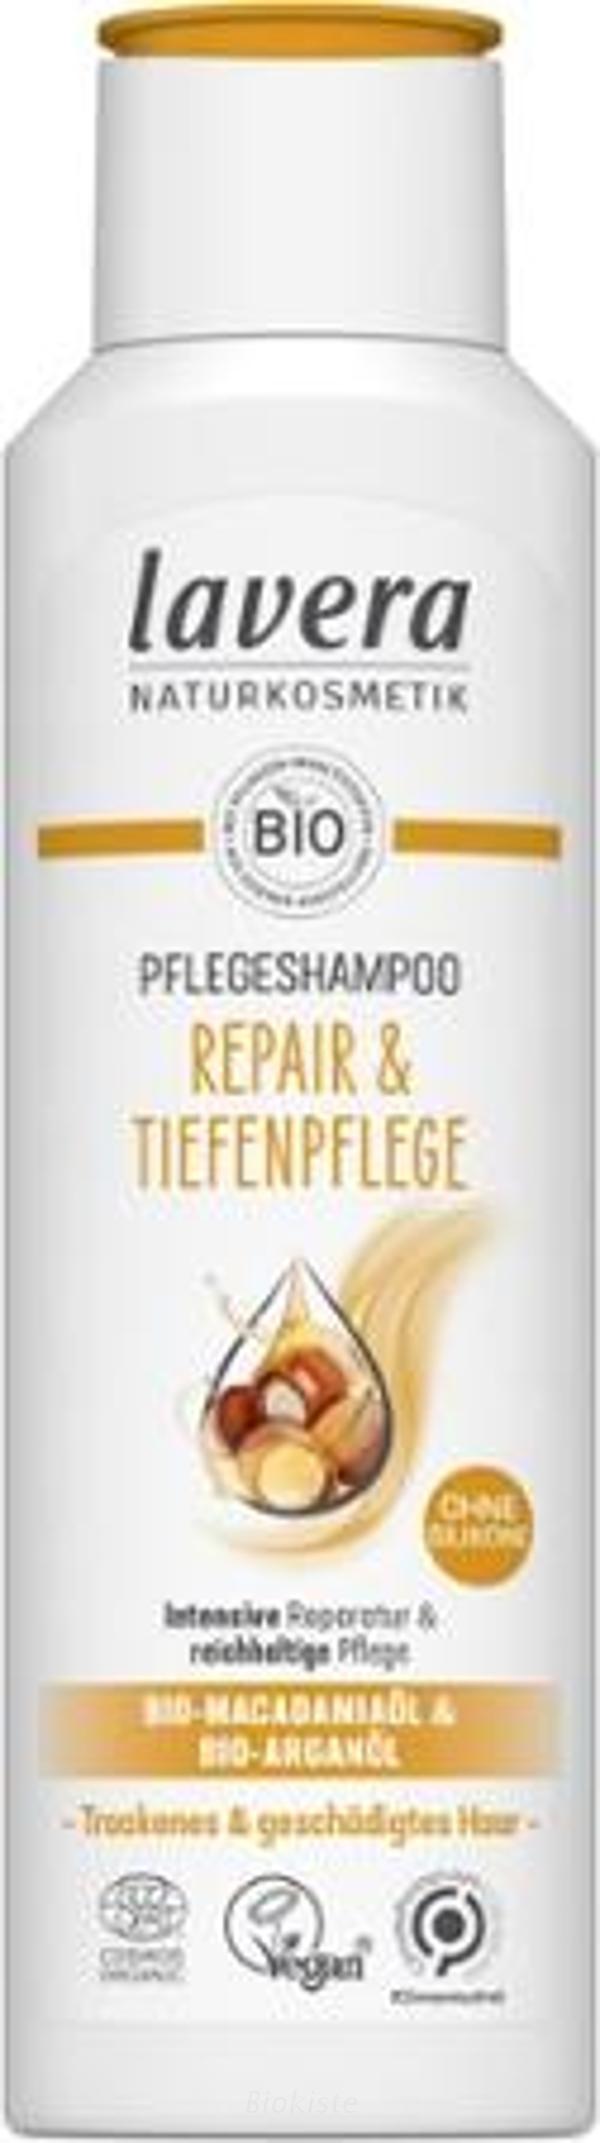 Produktfoto zu Shampoo Expert Repair und Tiefenpflege 250 ml